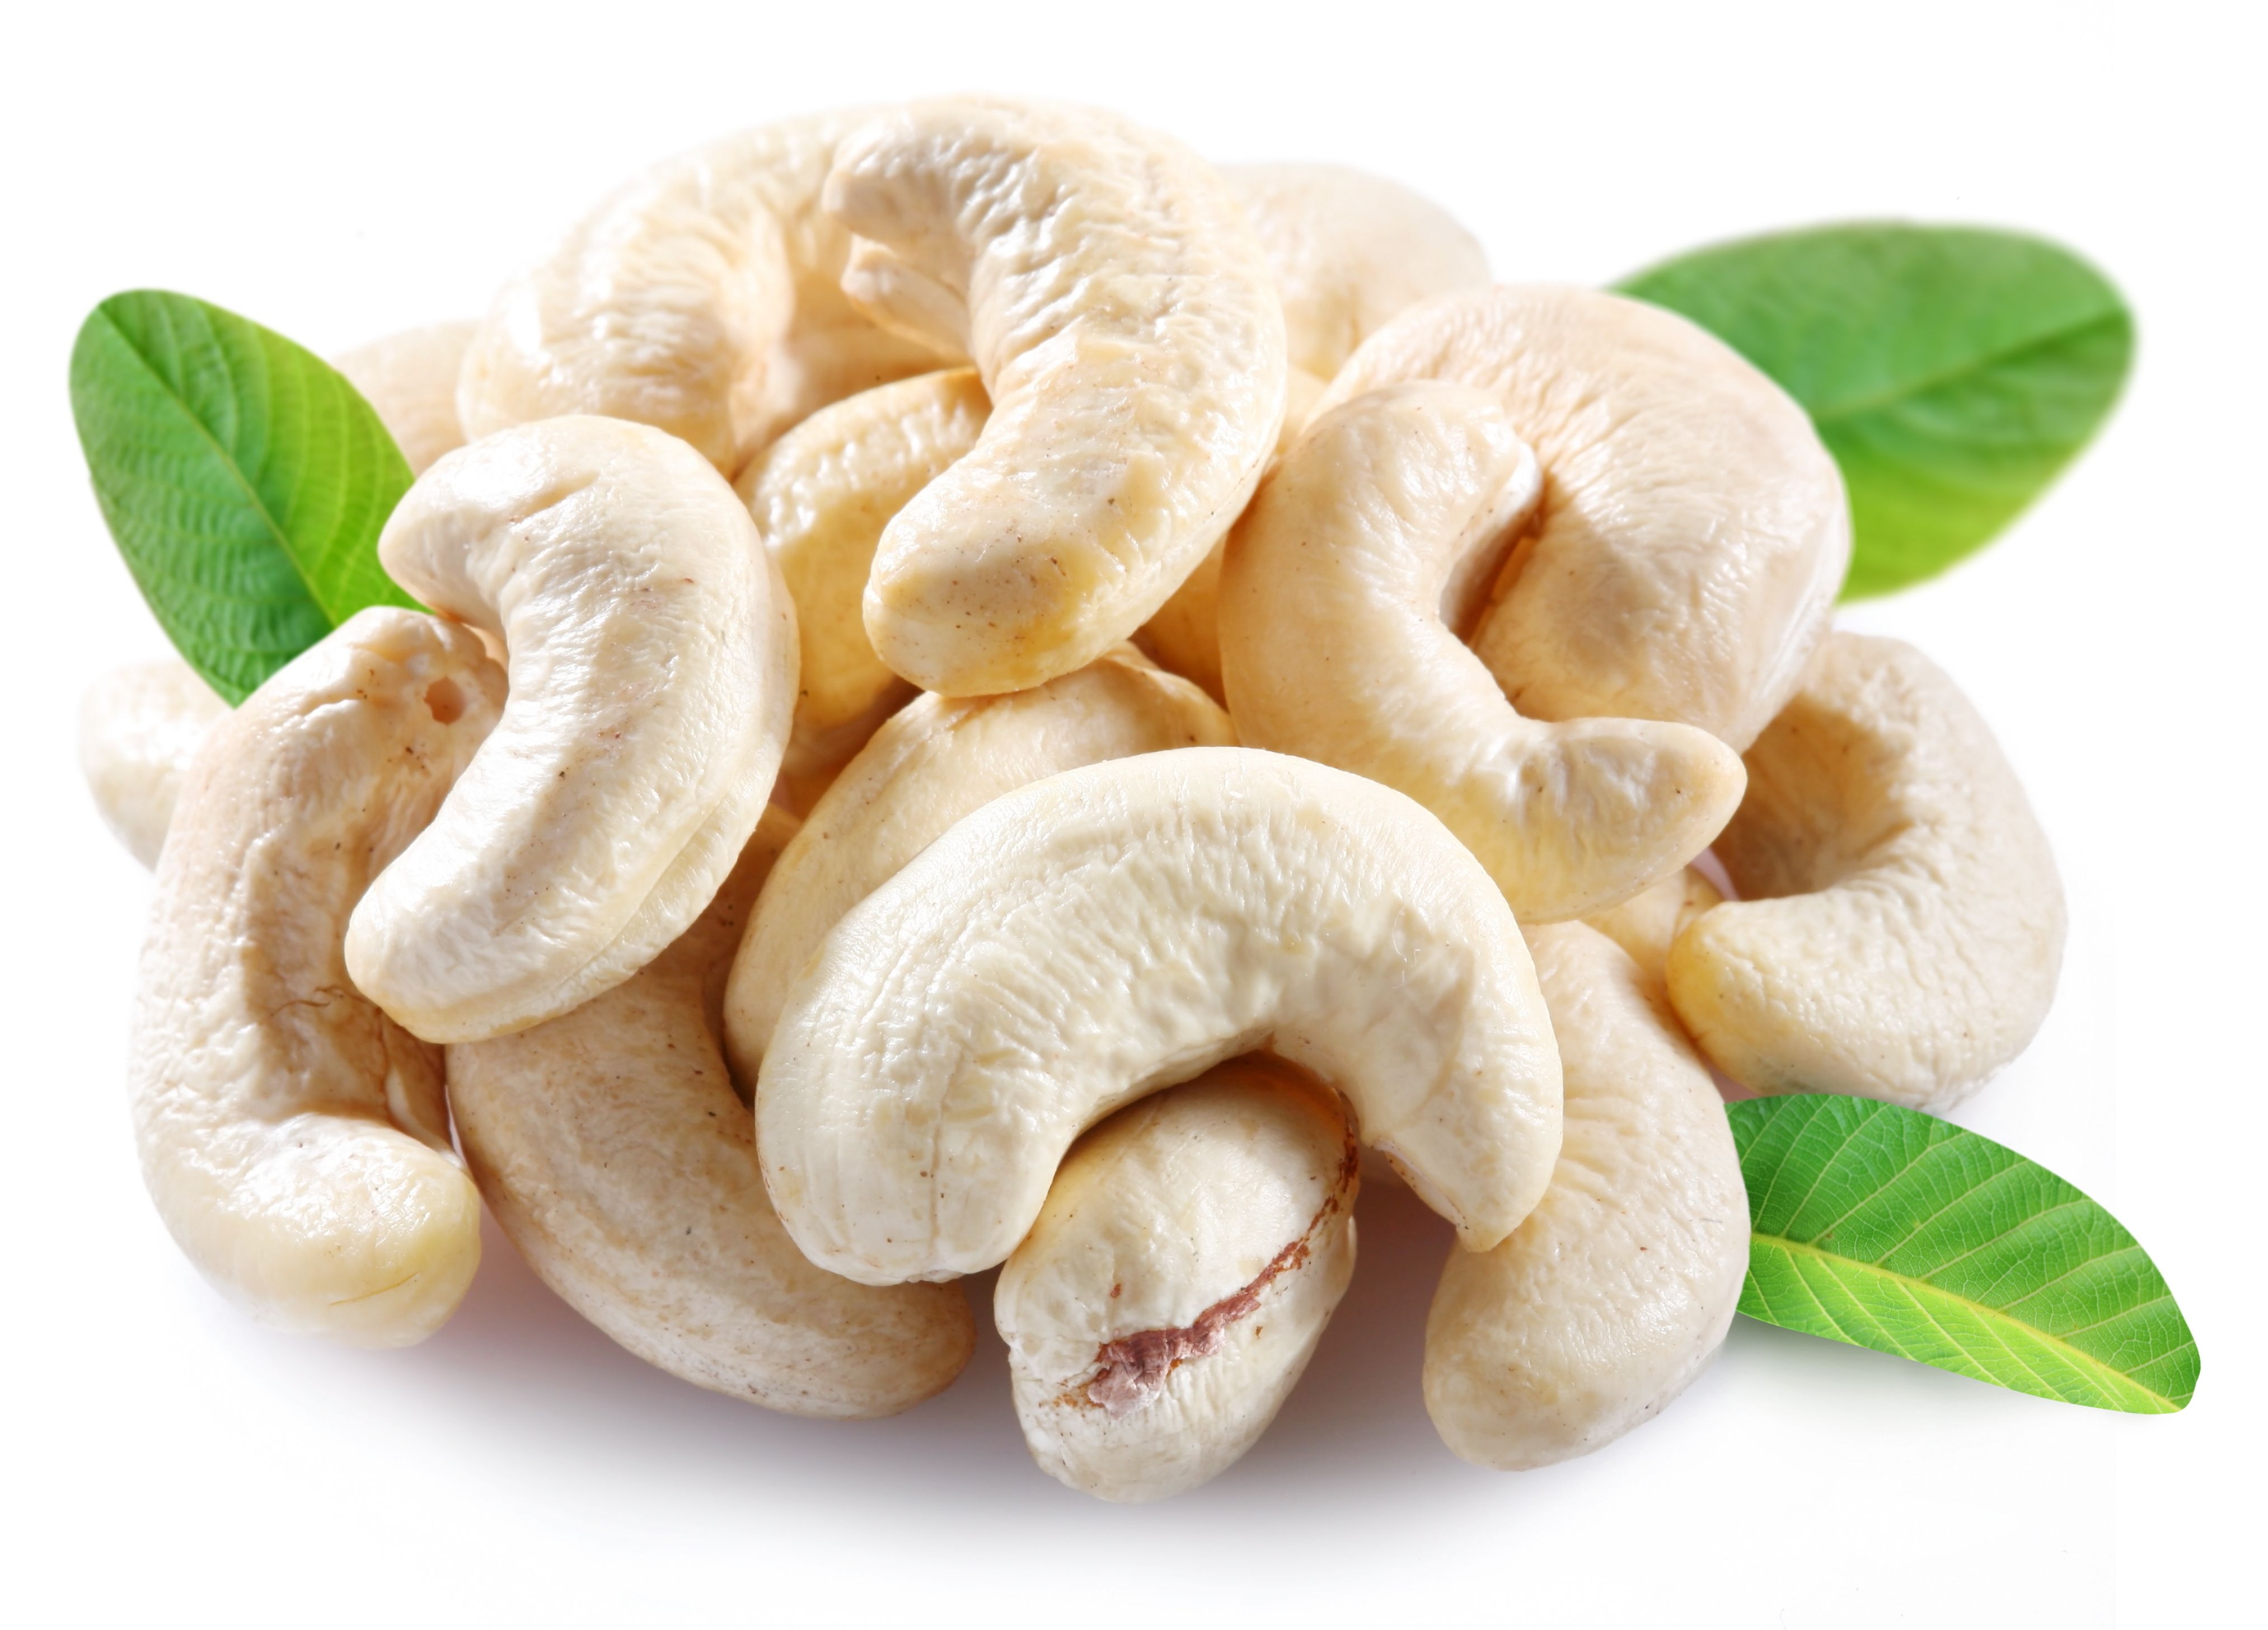 sunt nuci de cashew bun pentru pierderea în greutate